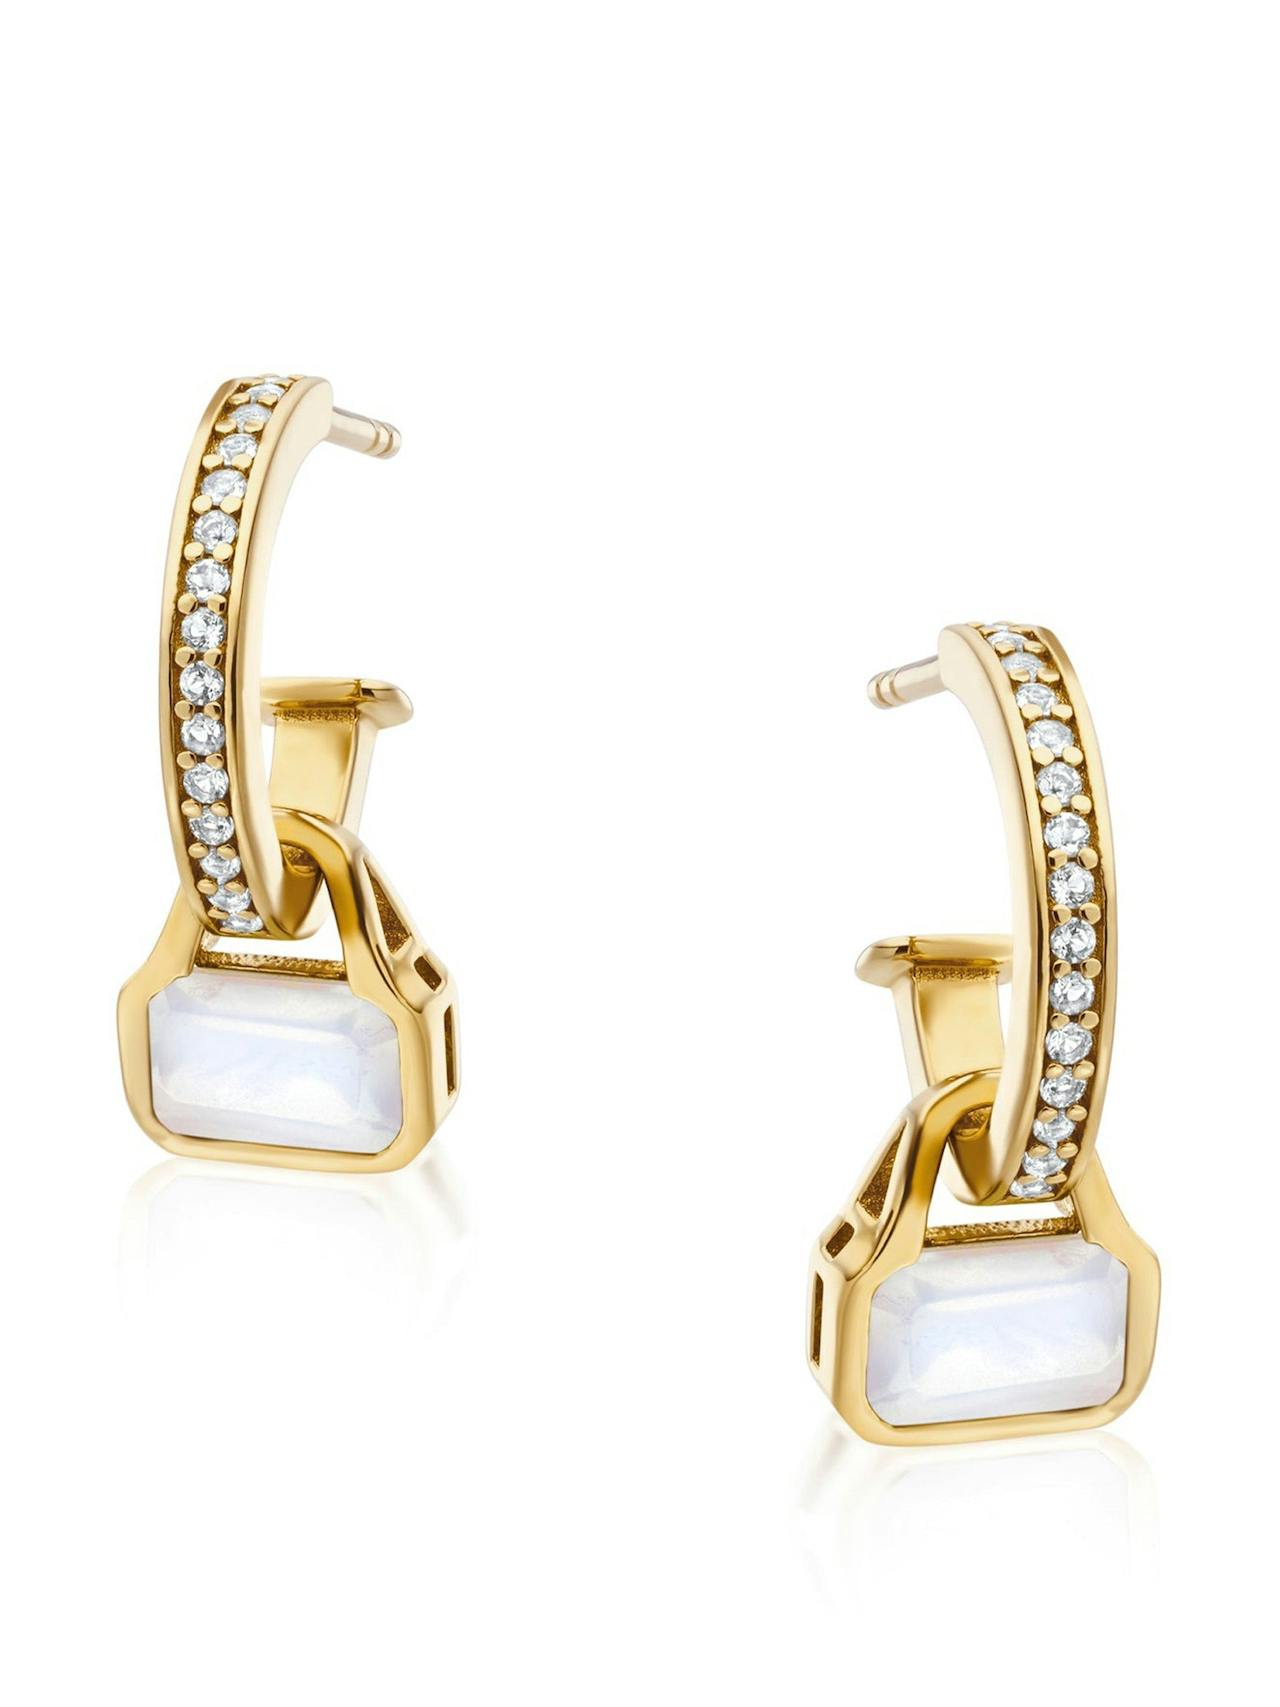 Moonstone charms on white topaz hoop earrings